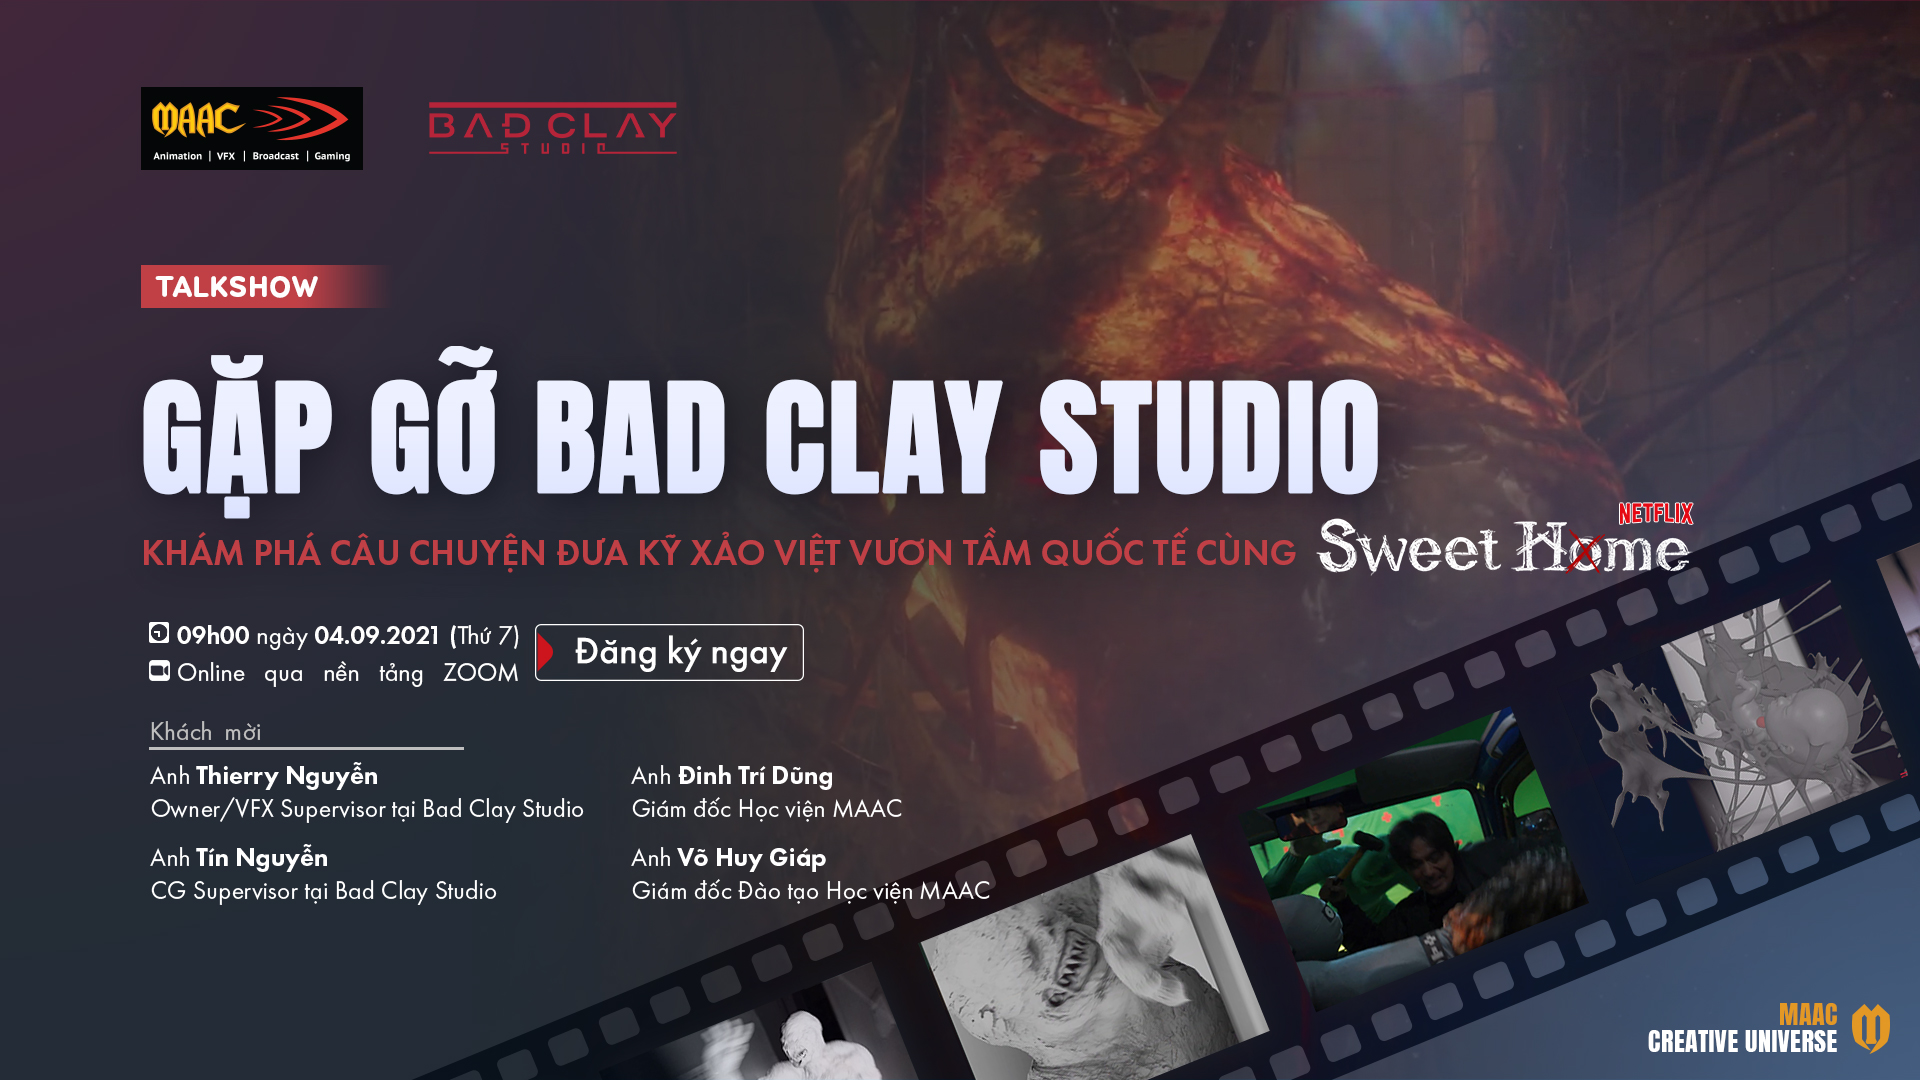 Talkshow] Gặp gỡ Bad Clay Studio: khám phá câu chuyện đưa kỹ xảo Việt vươn  tầm quốc tế cùng Sweet Home • RGB